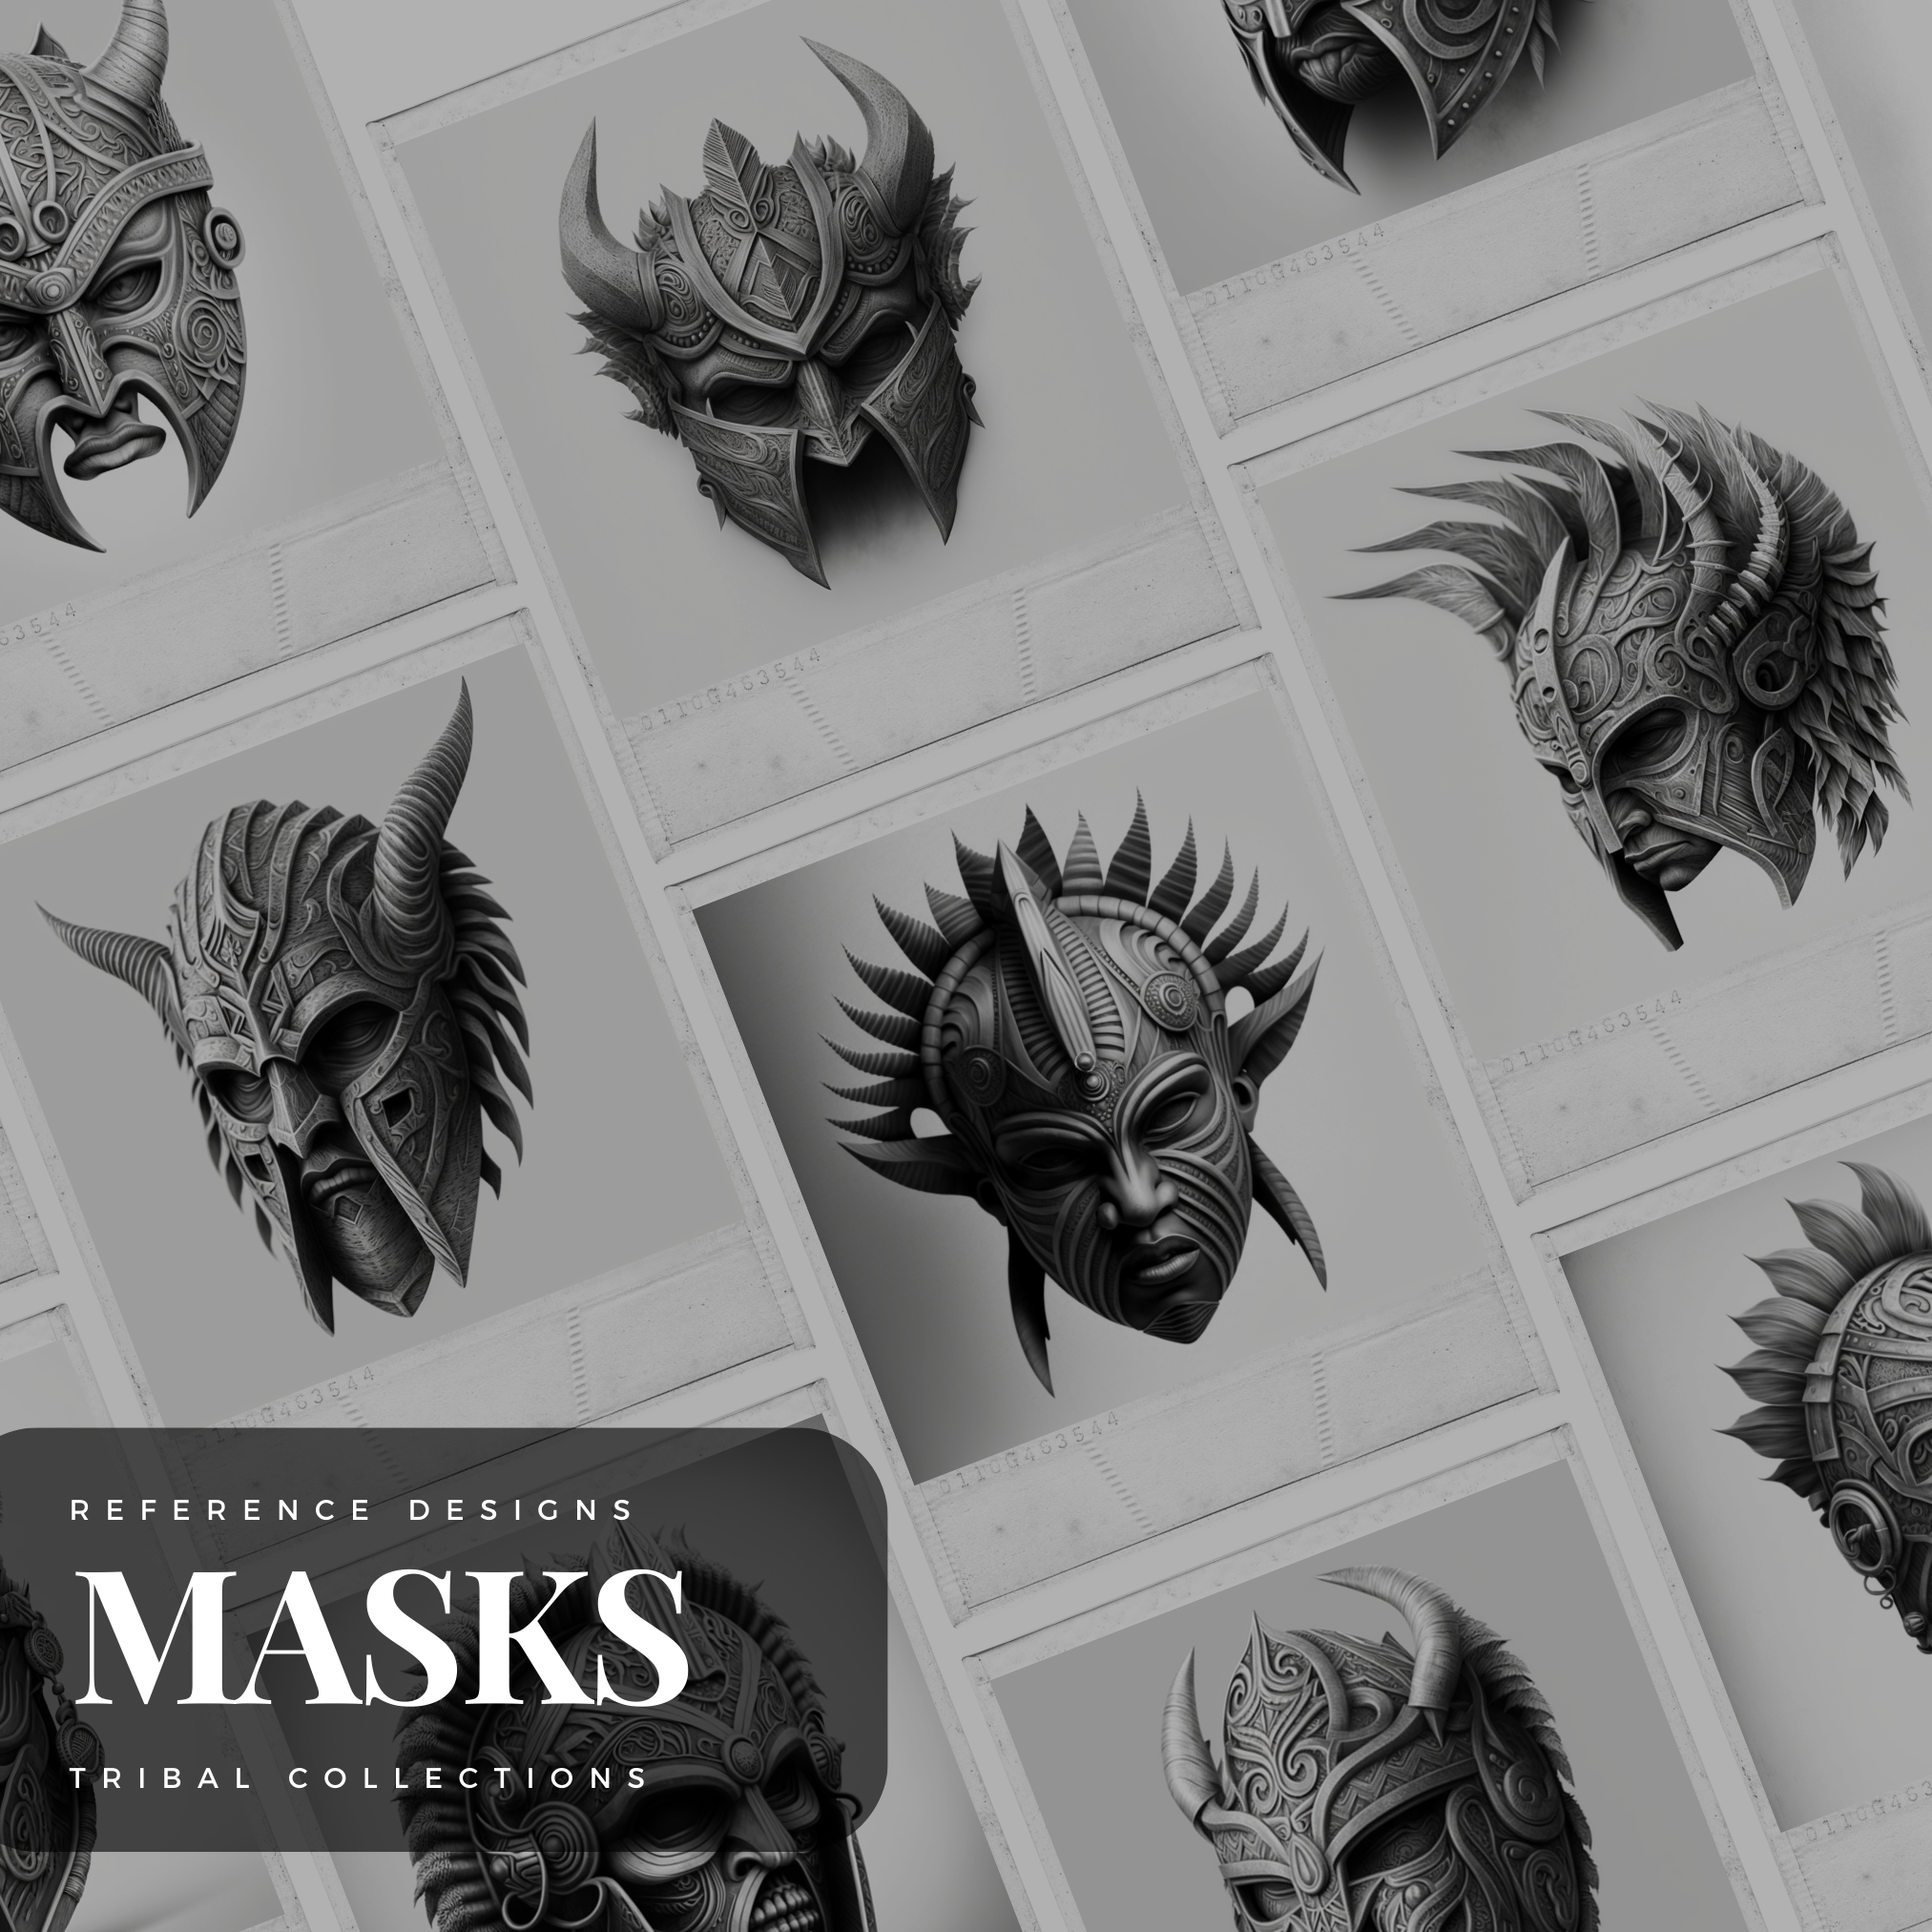 Tribal Warrior Masks Digital Reference Design Collection: 50 Procreate & Sketchbook Images